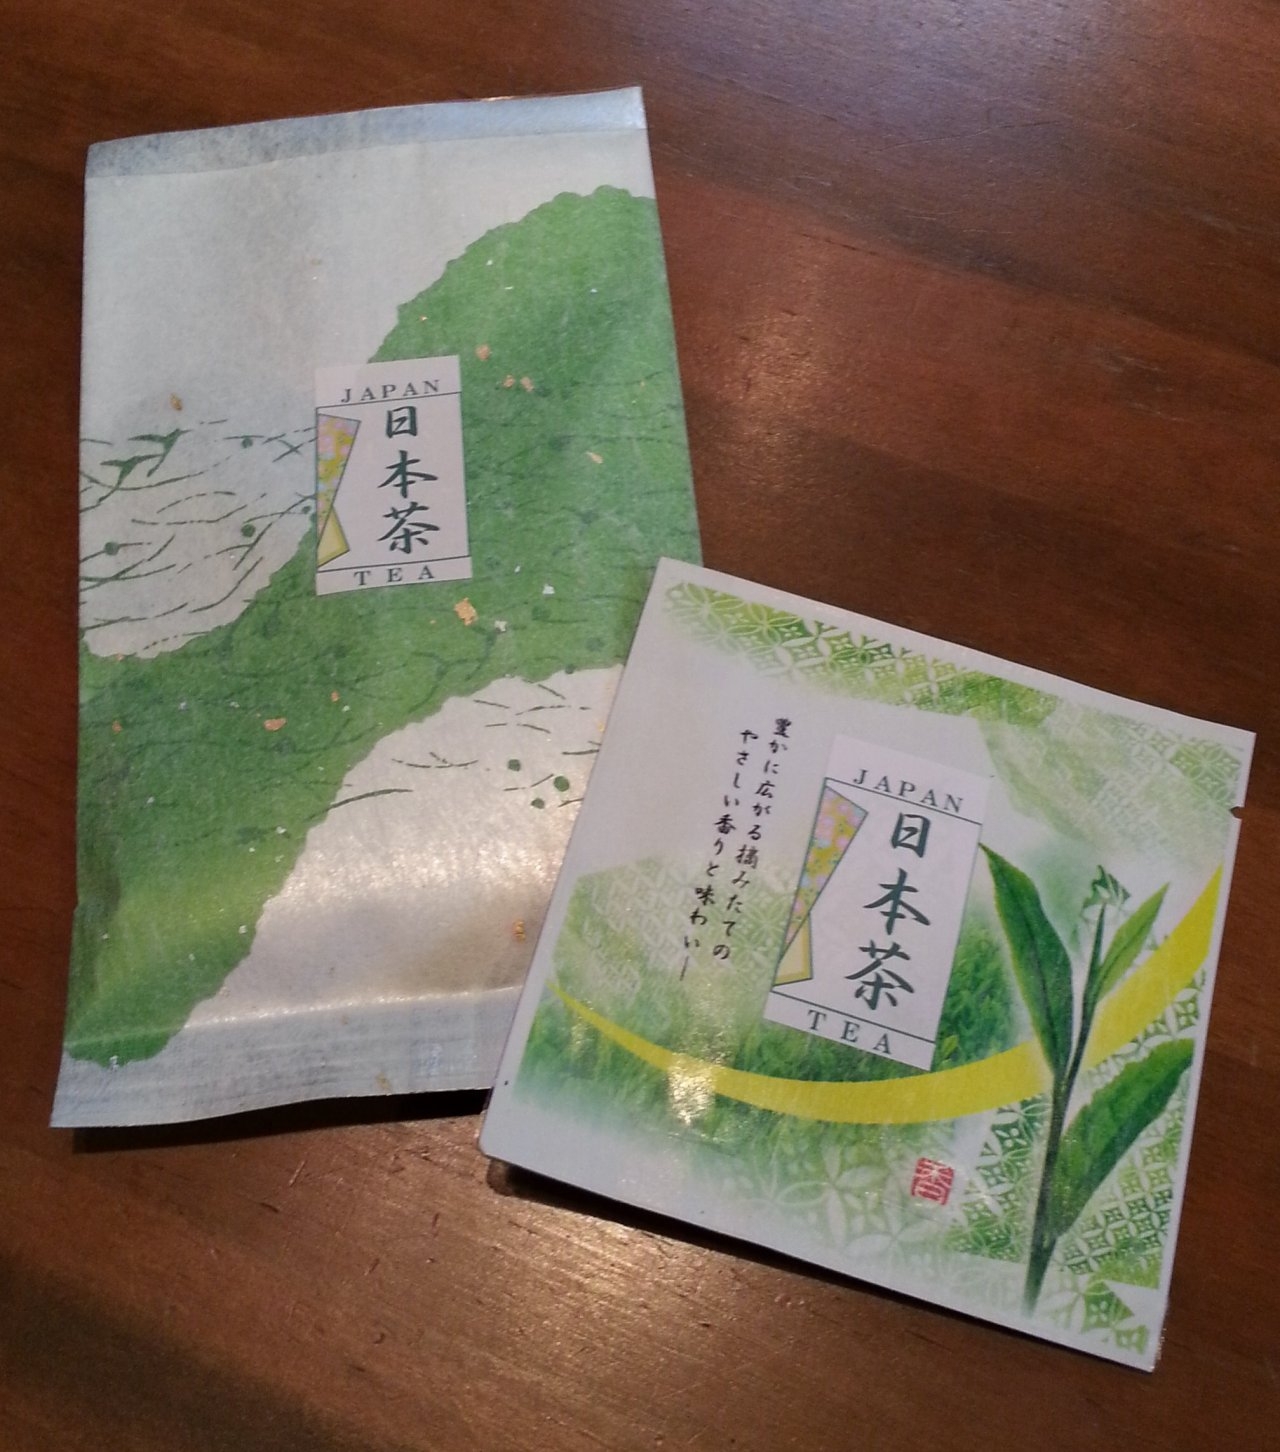 販売された「森のかおり」を「日本茶」として、紹介。試飲をしたところ、人気が出て、完売いたしました。